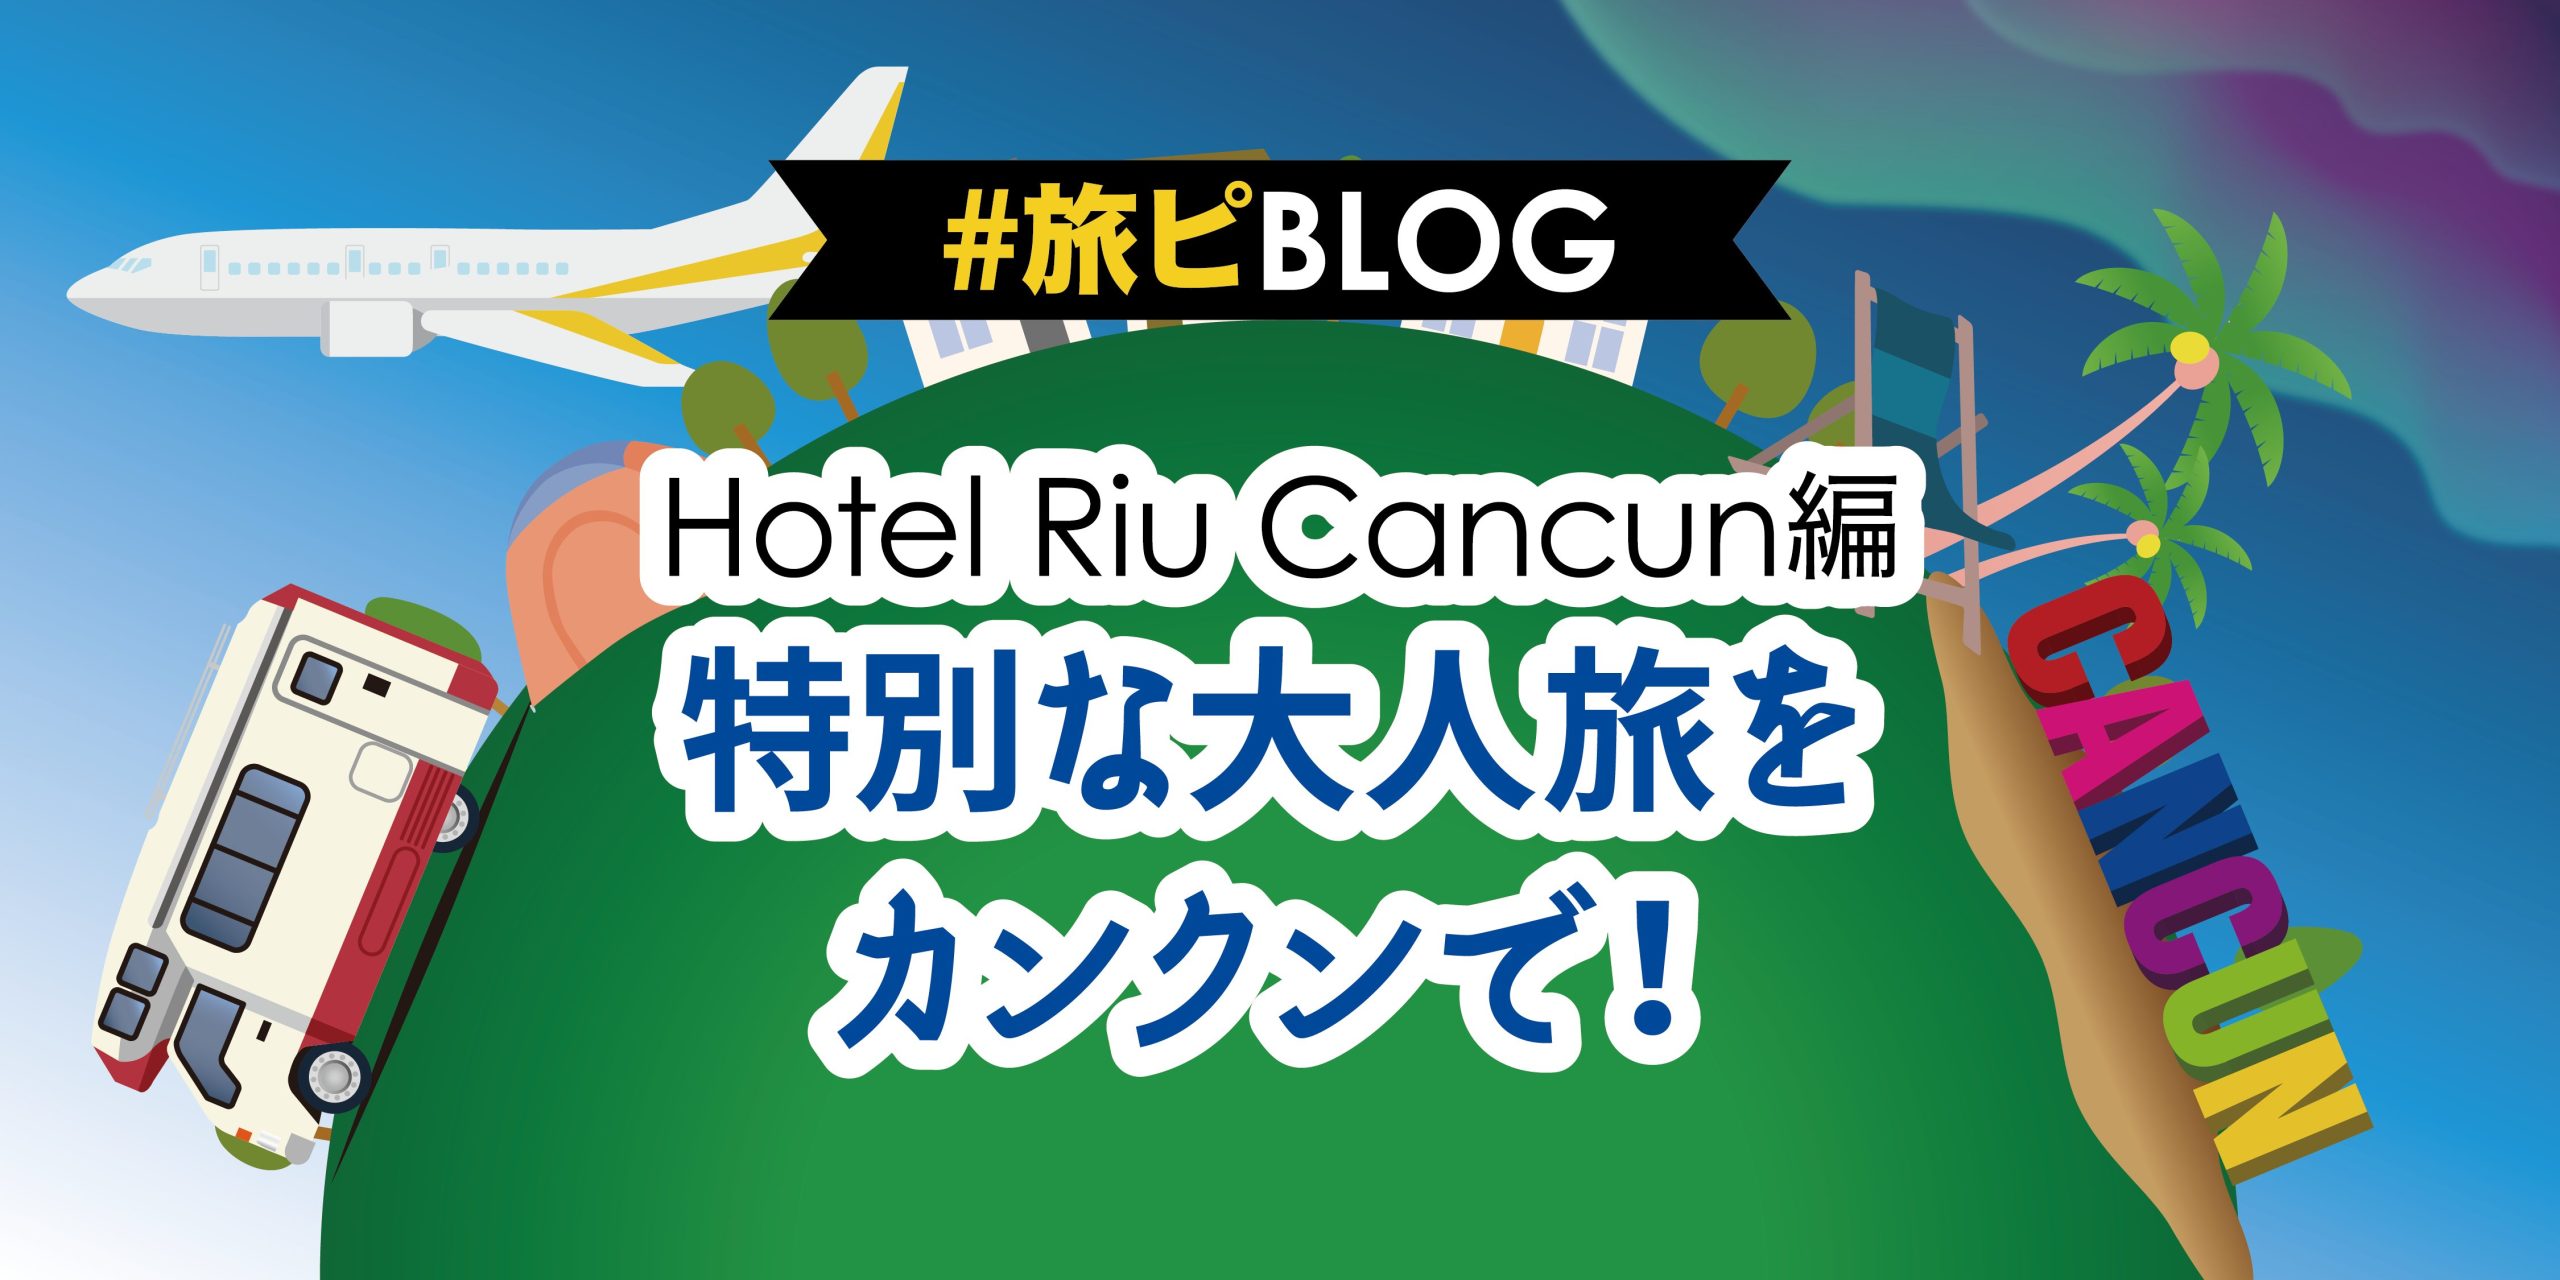 特別な大人旅をカンクンで！（Hotel Riu Cancun編）